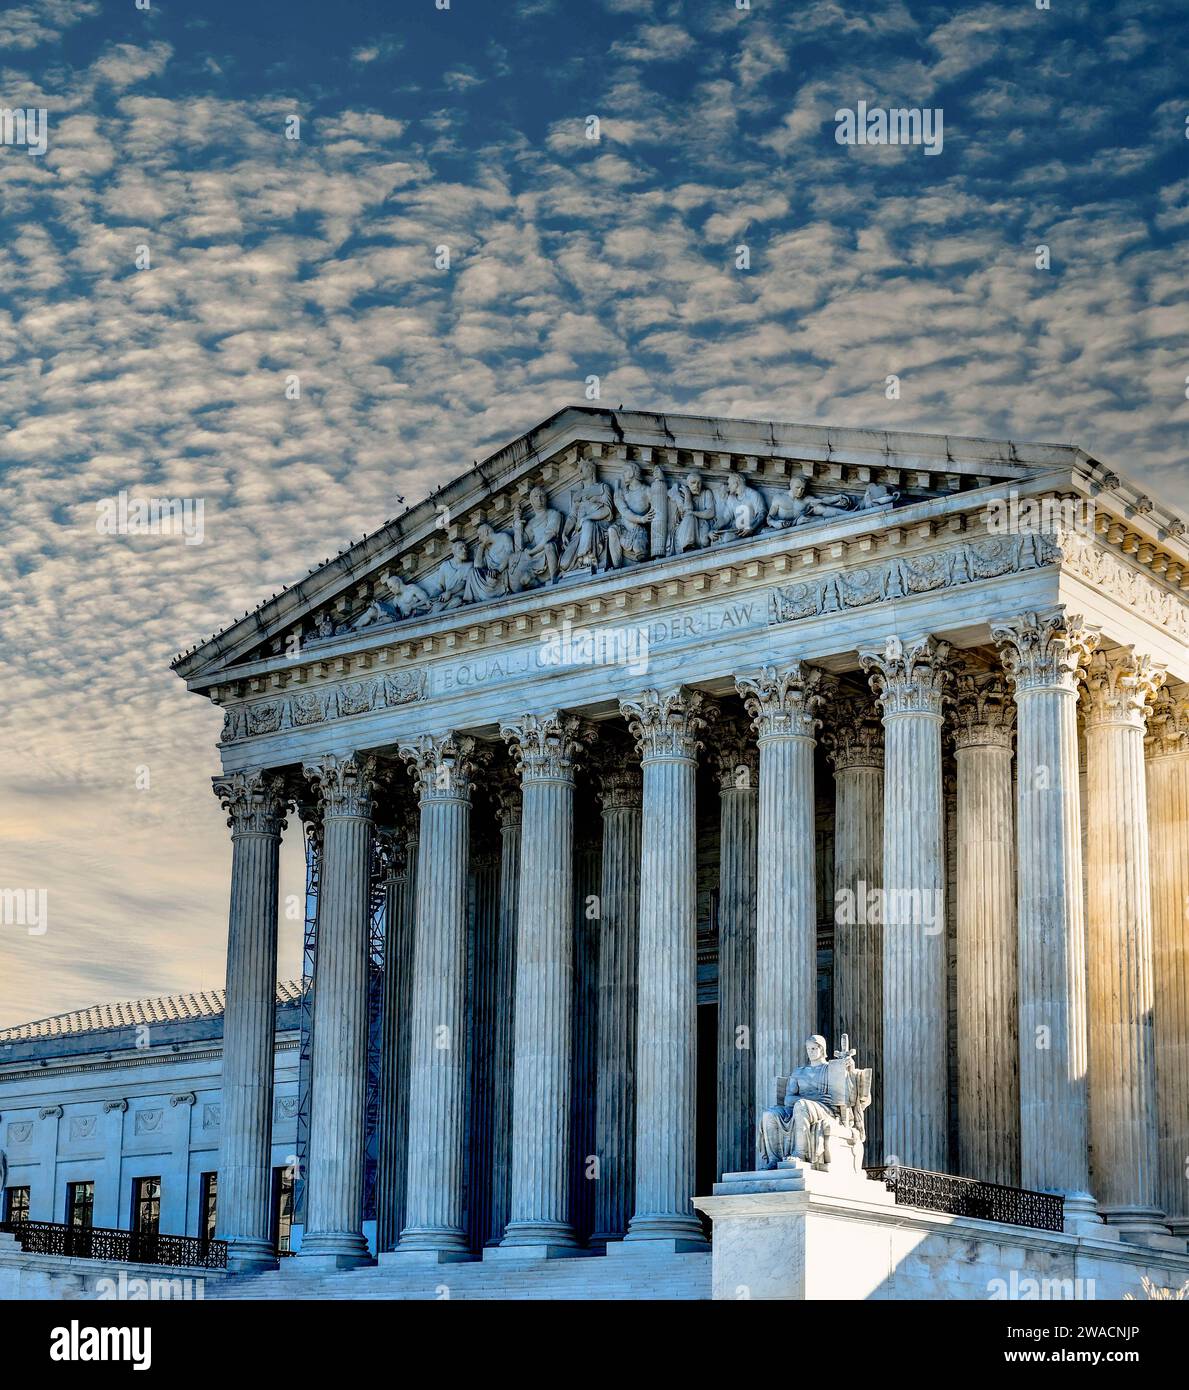 Der bewölkte und dramatische Himmel lässt die neoklassizistische Architektur des US Supreme Court Building die sitzende weiße Marmorstatue „The Guardian“, DC, hervorheben Stockfoto